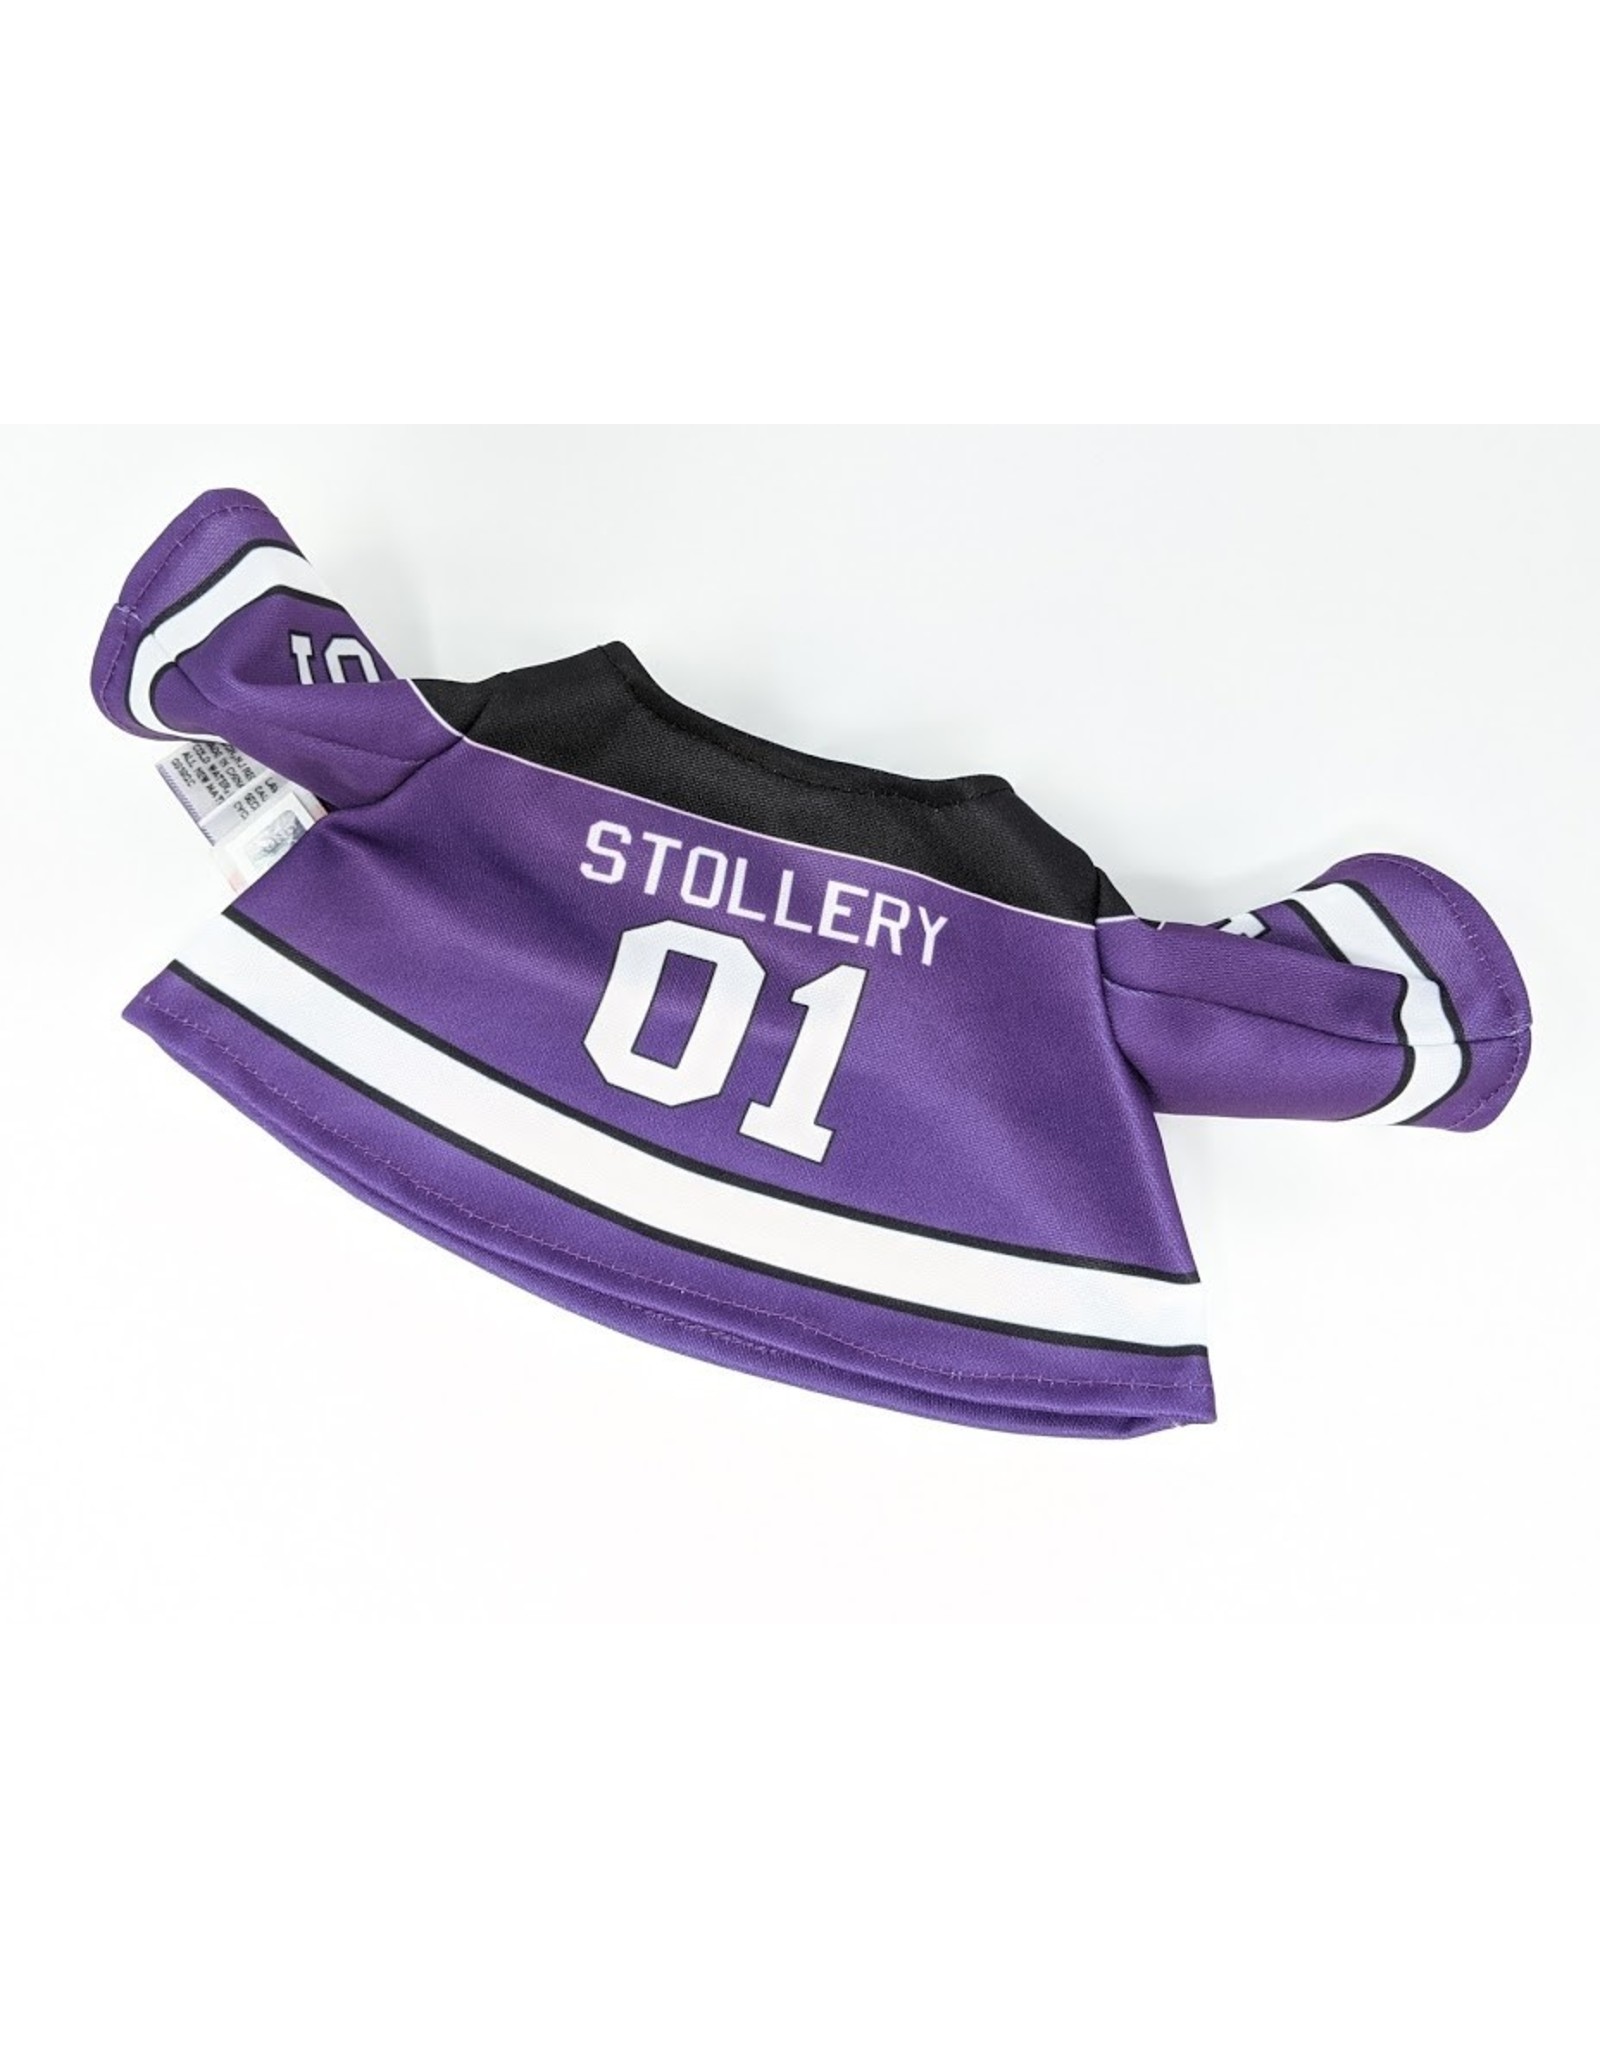 Stollery Bearwear - hockey jersey